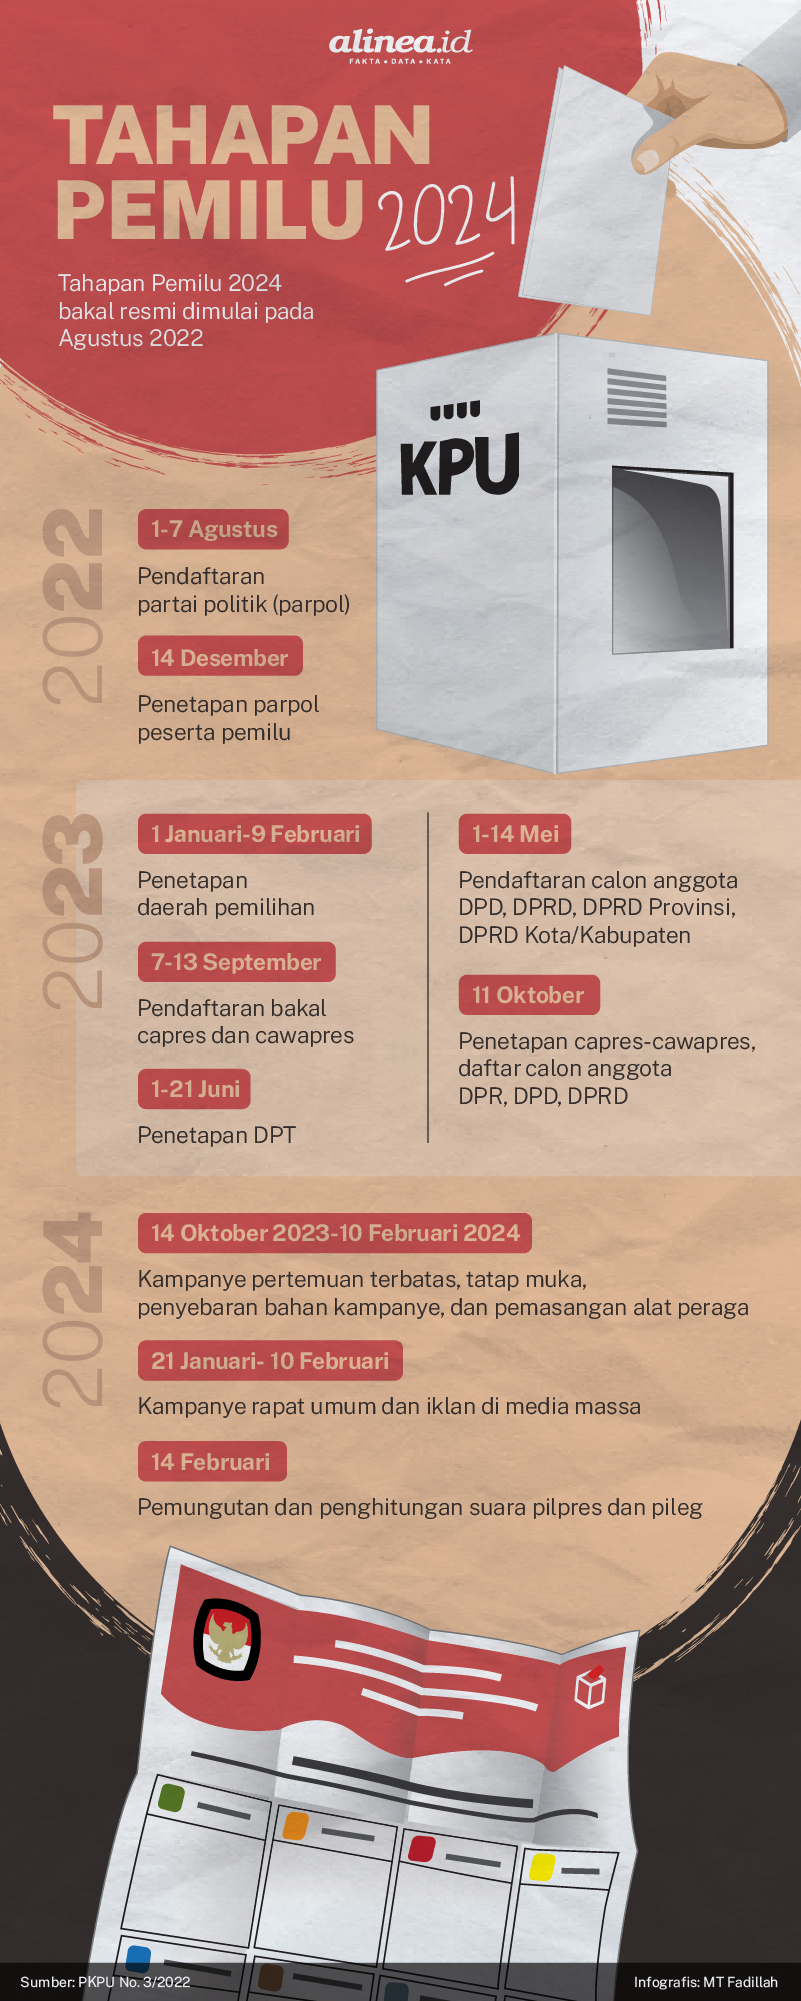 Infografik tahapan Pemilu 2024. Alinea.id/MT Fadillah